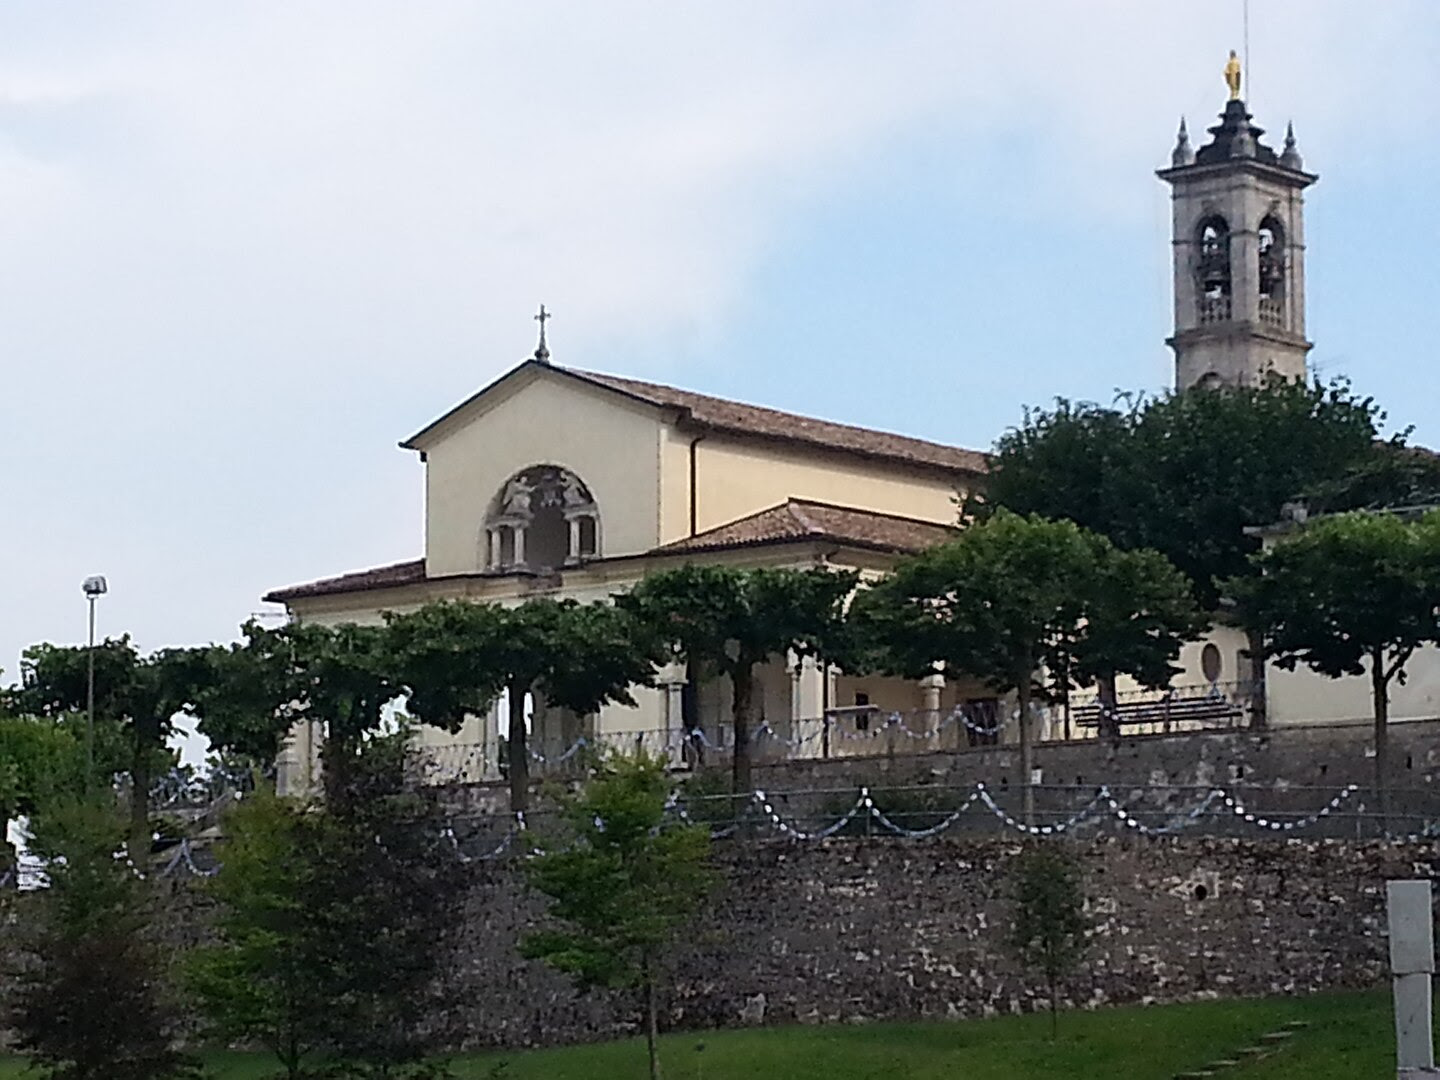 Cicloescursione tra la Val Cavallina e la Valle Seriana con salita al Colle Gallo – Madonna dei ciclisti e al Santuario di Altino